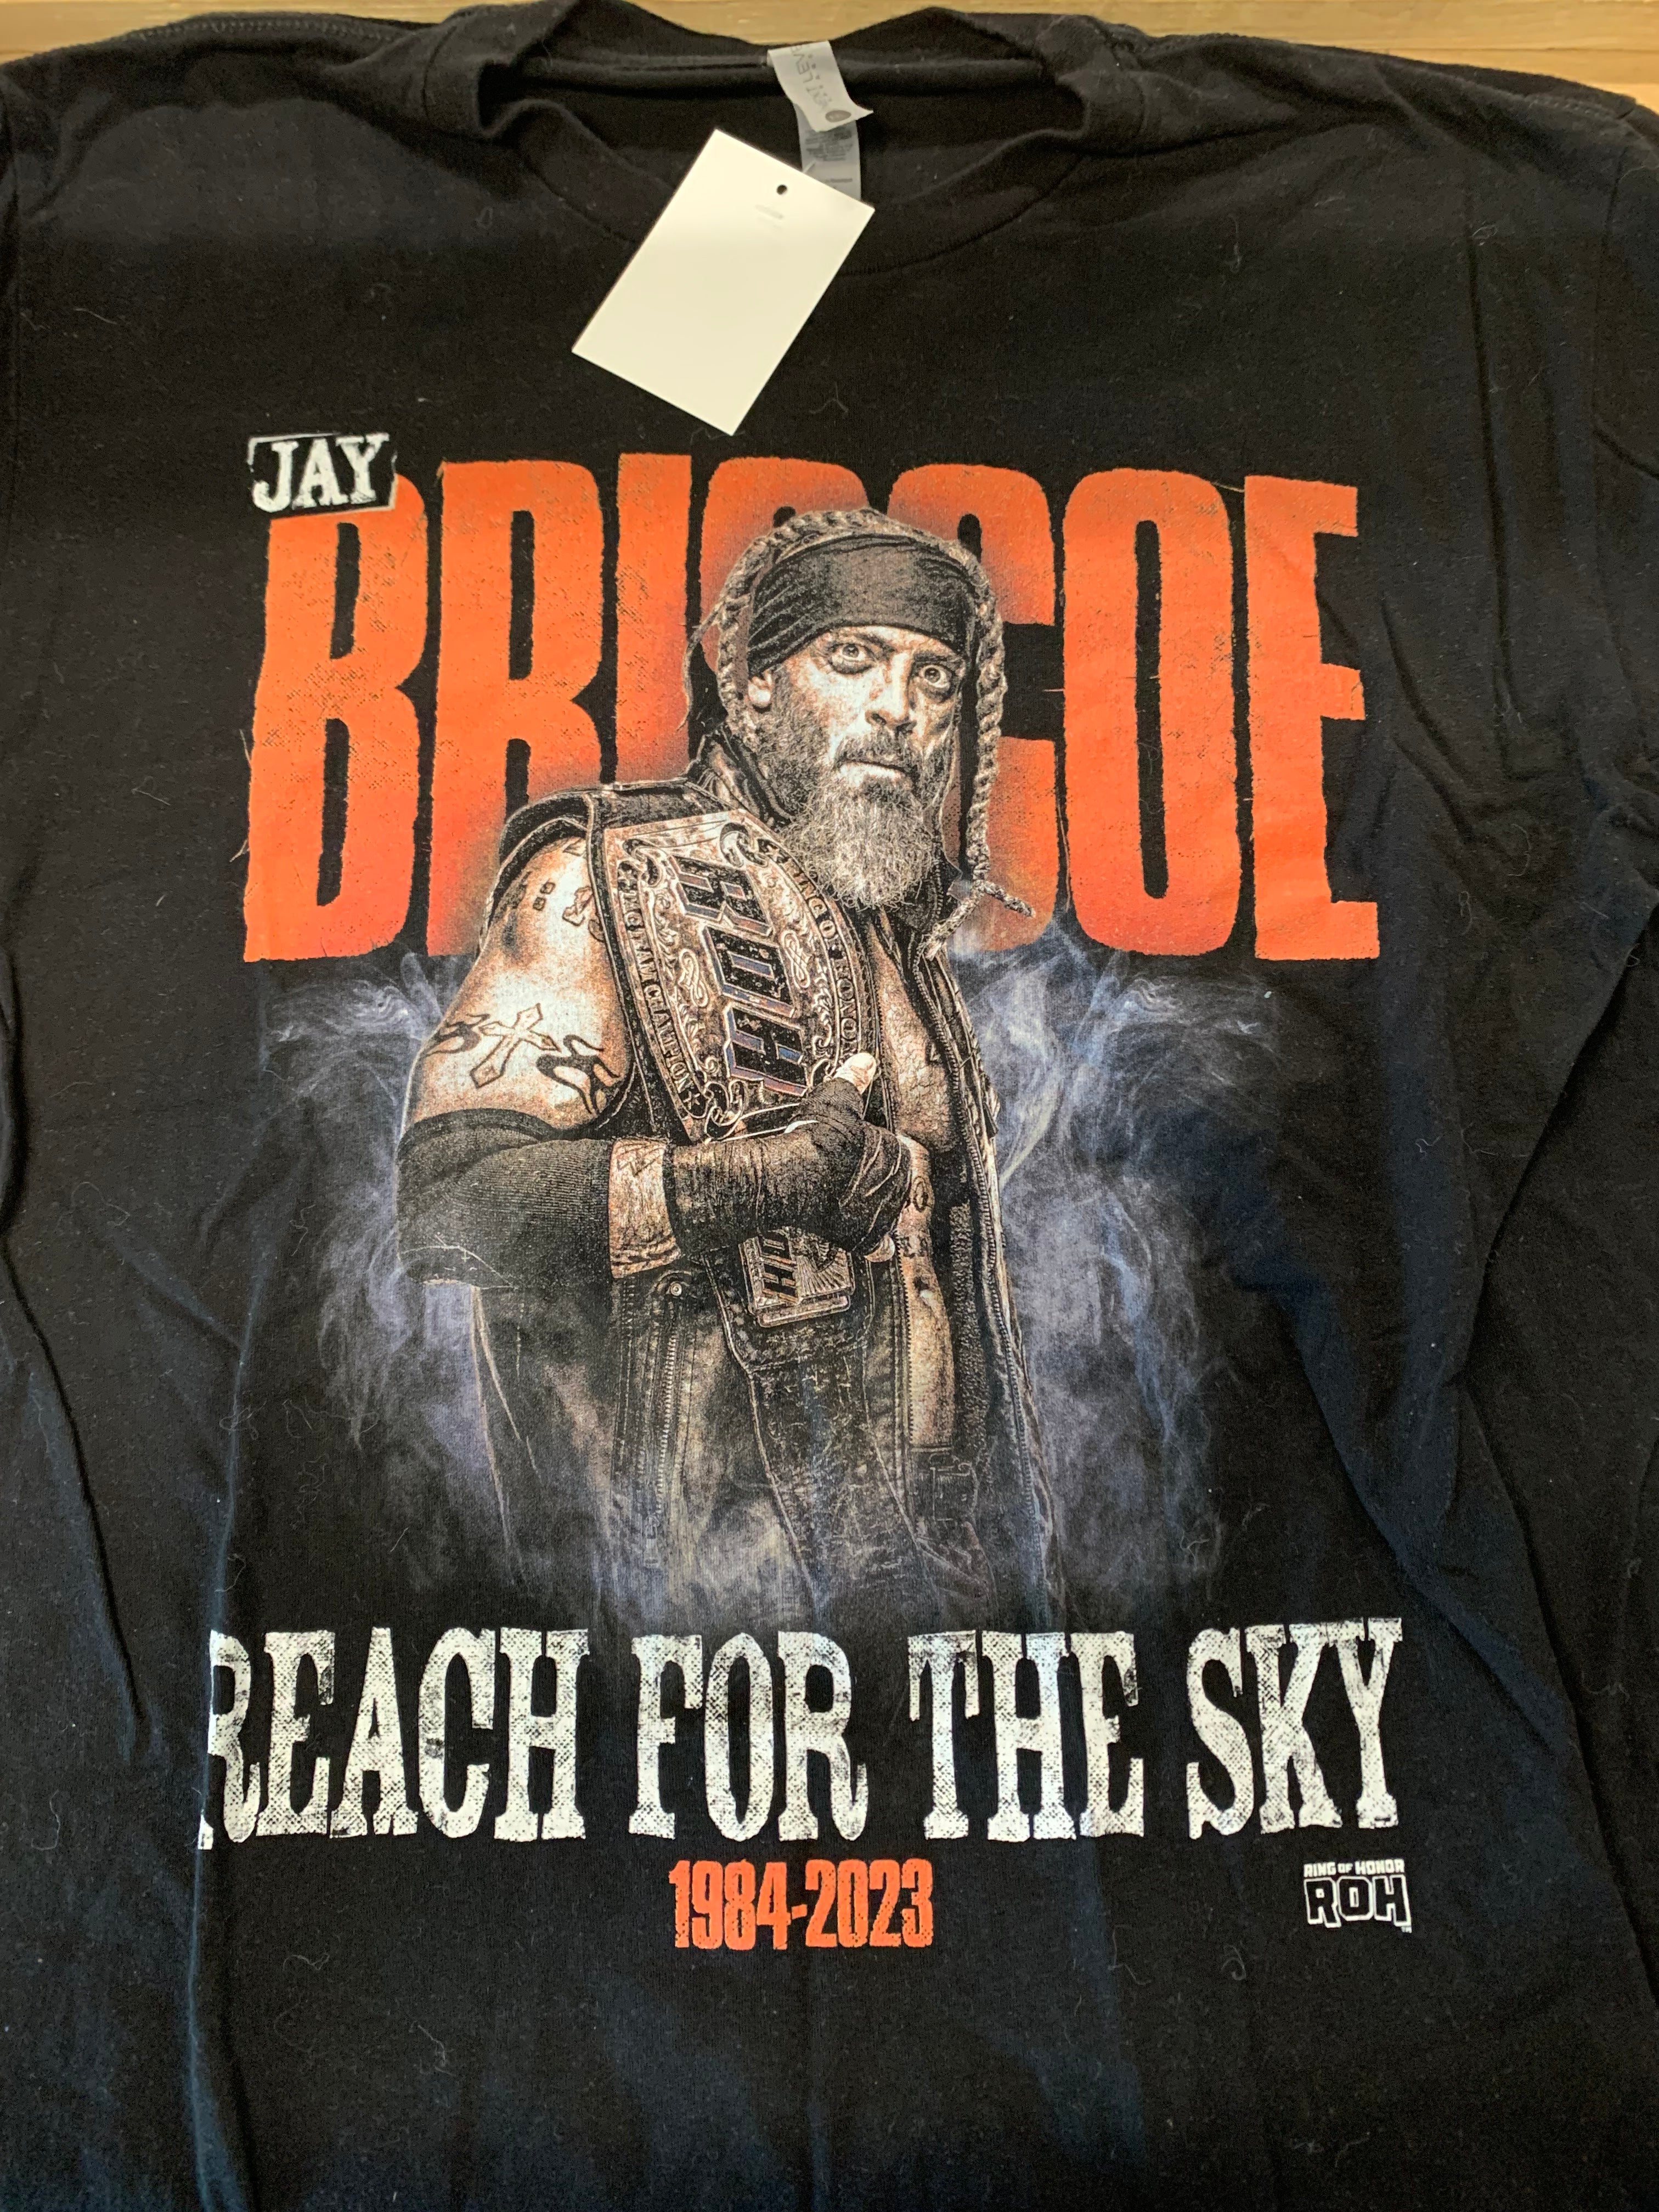 Jay Briscoe Reach For The Sky 1984-2023 Memorial T-Shirt, Black, M